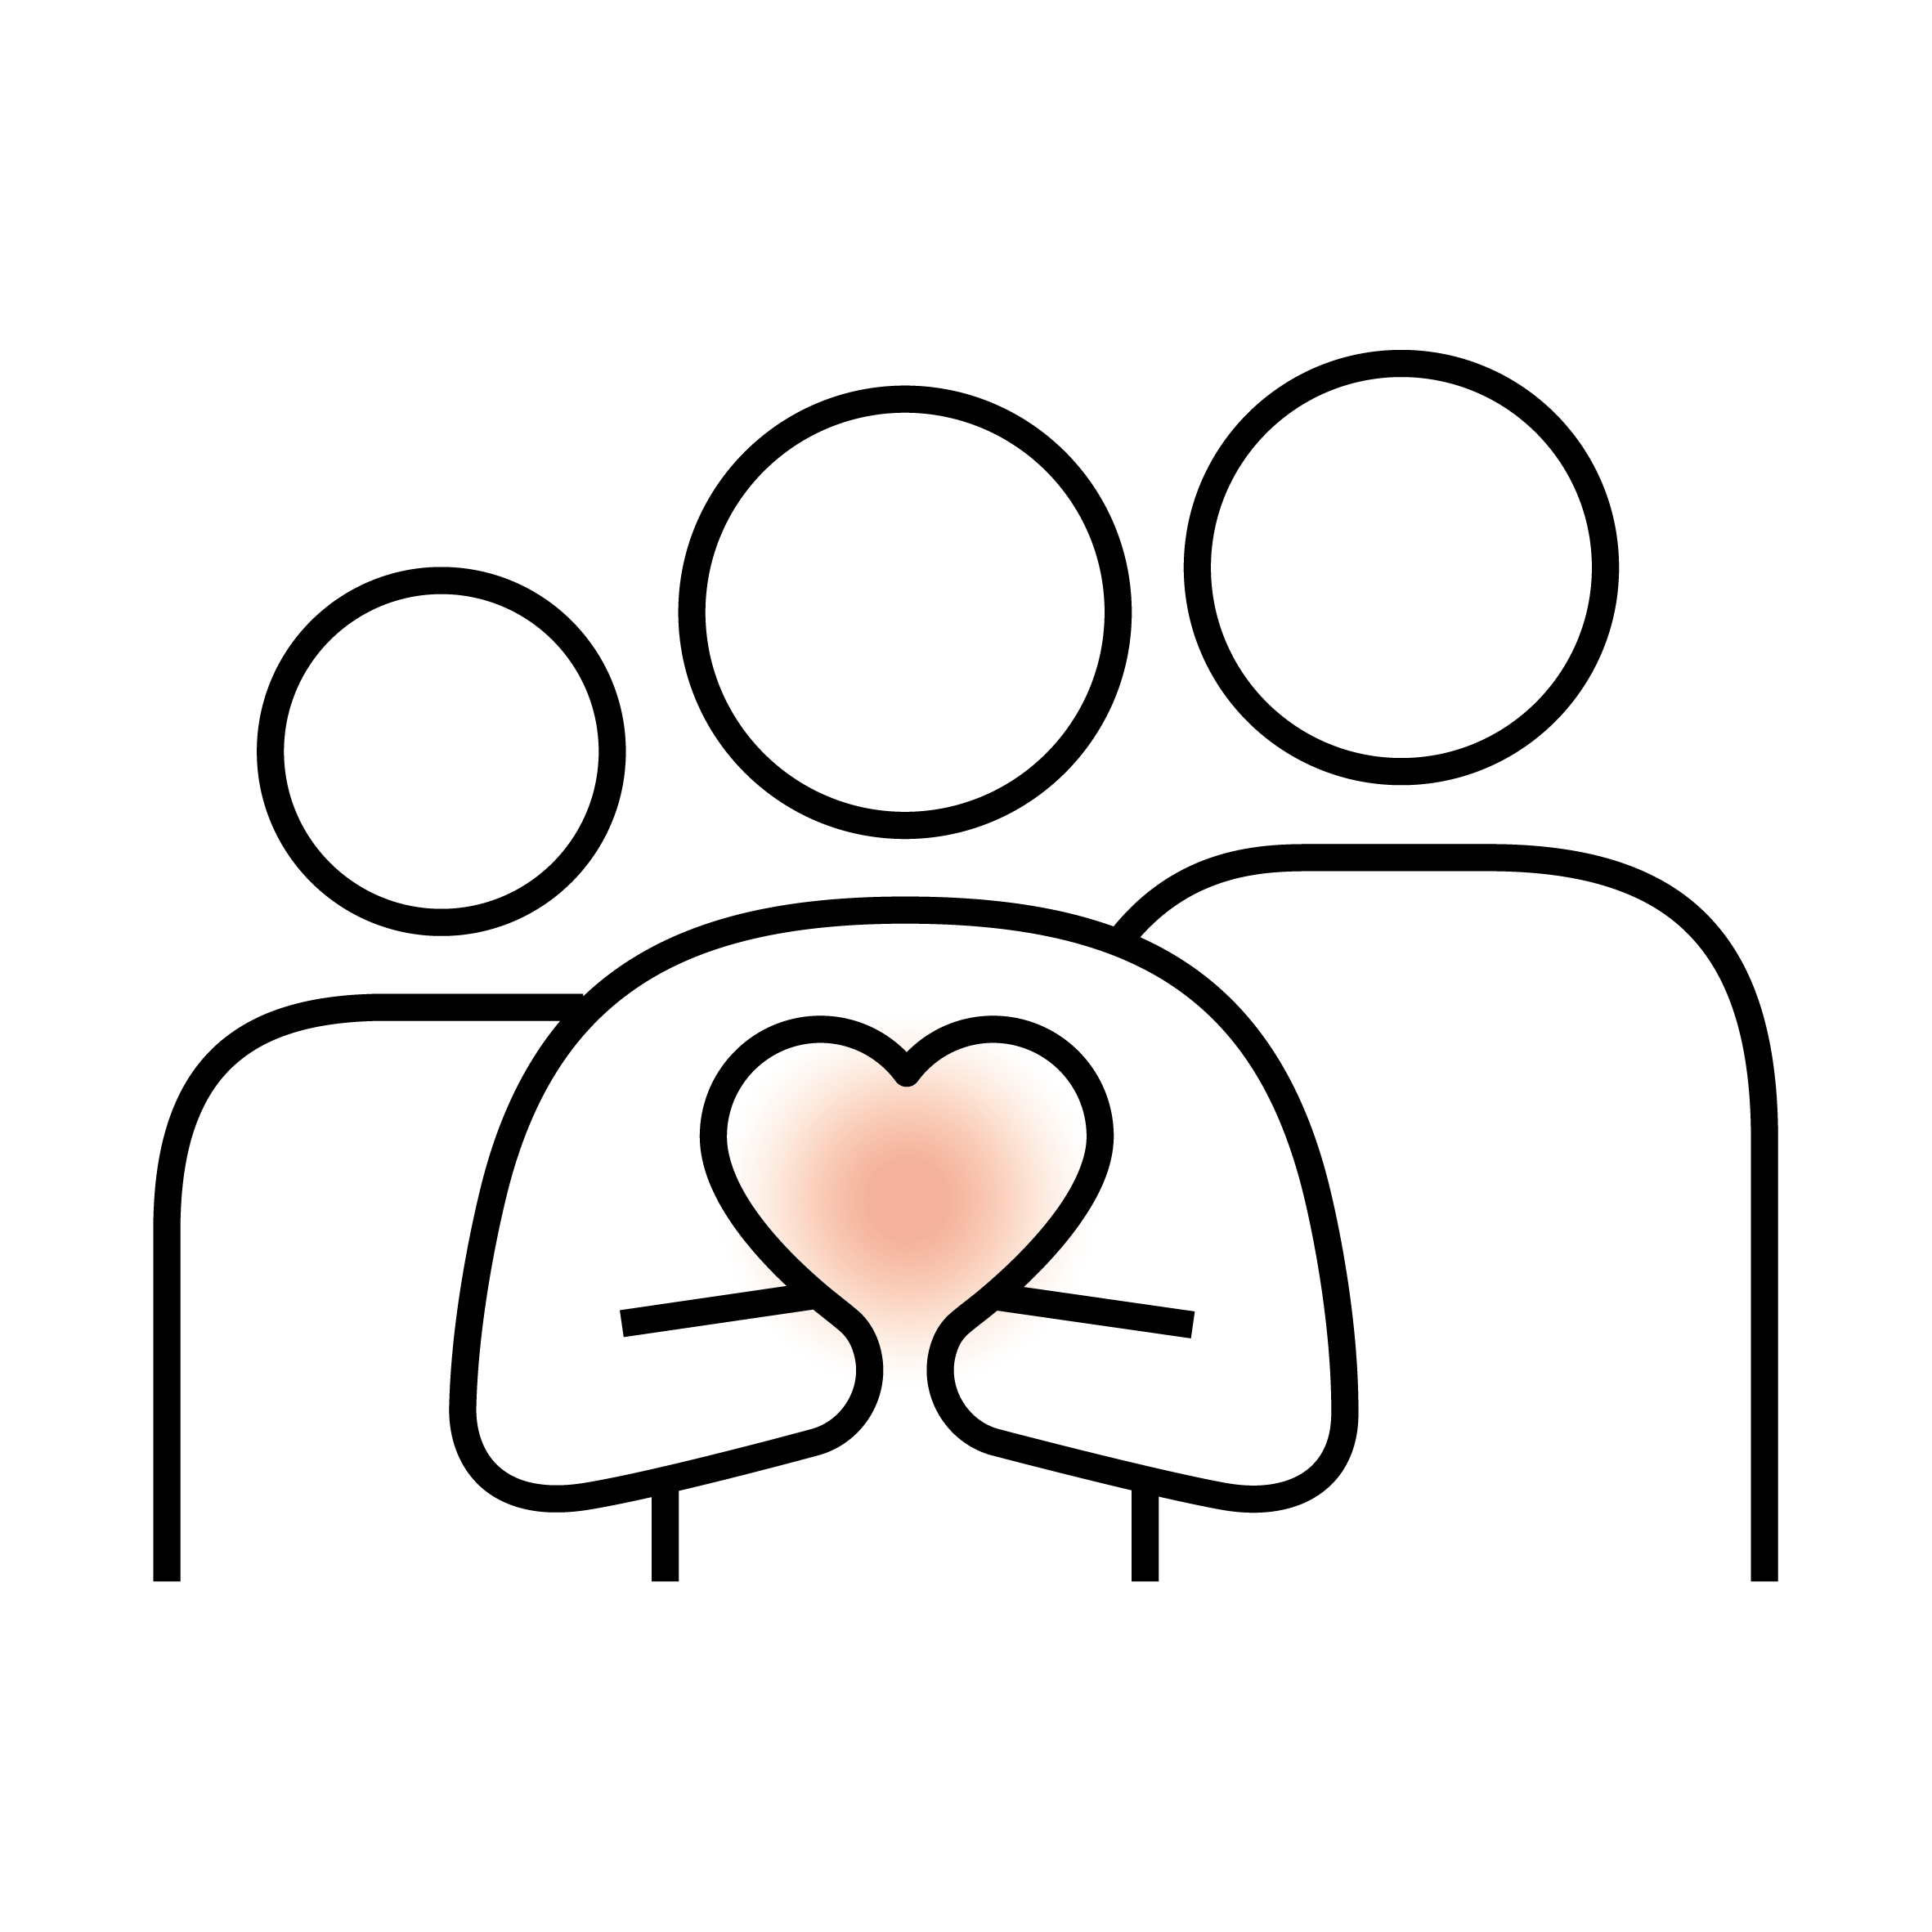 "Icon einer Familie mit Herzsymbol, stilisierte Illustration für soziale Einbindungen und Liebe."